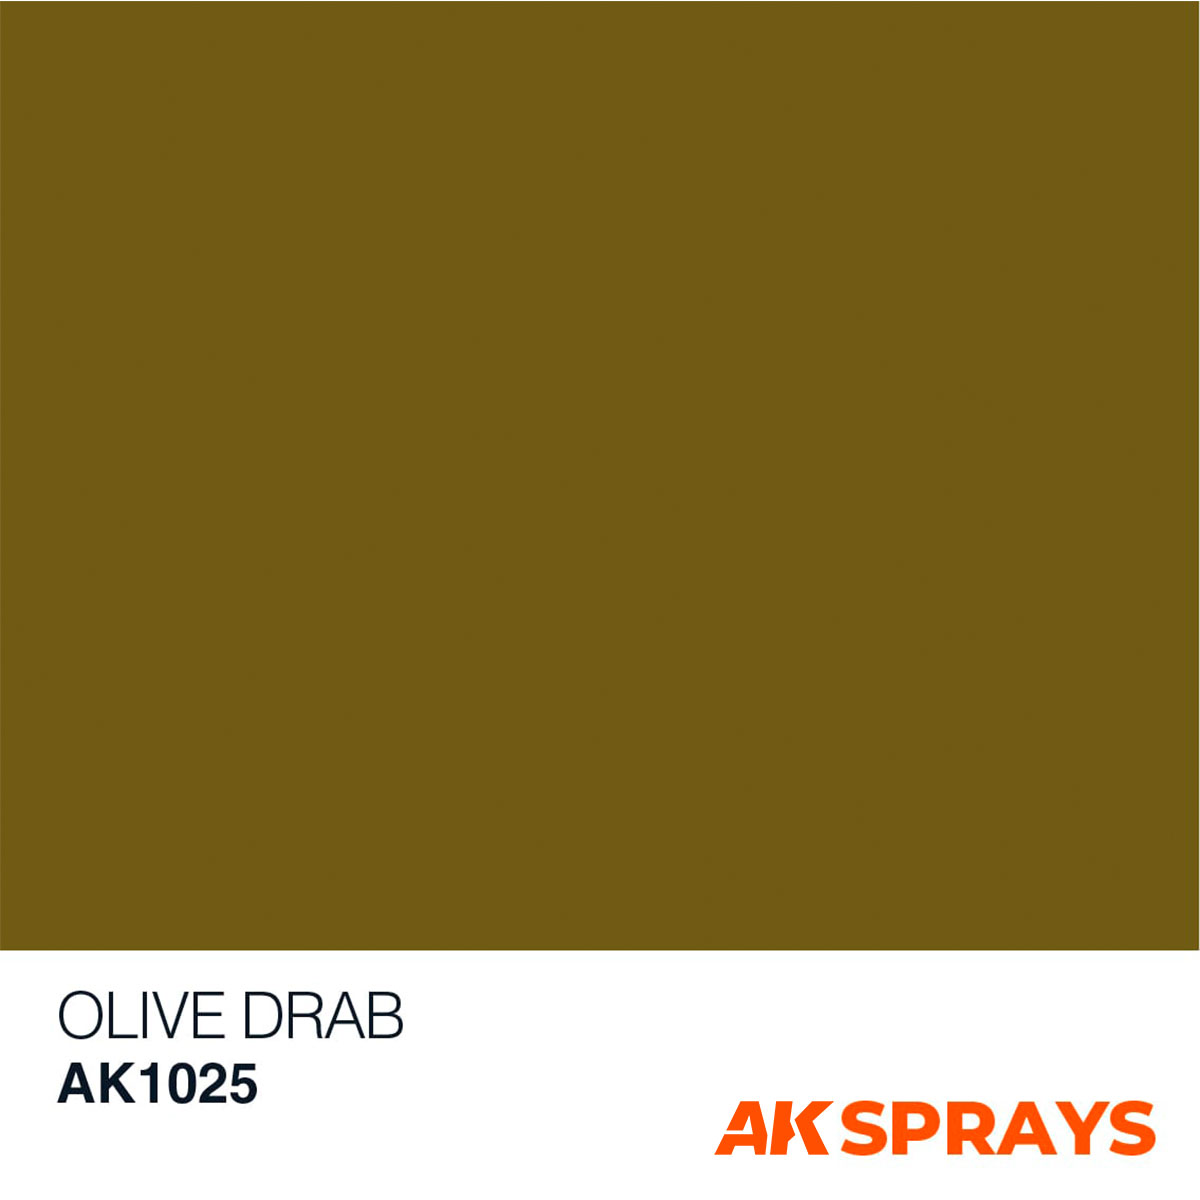 Olive Drab Color | vlr.eng.br